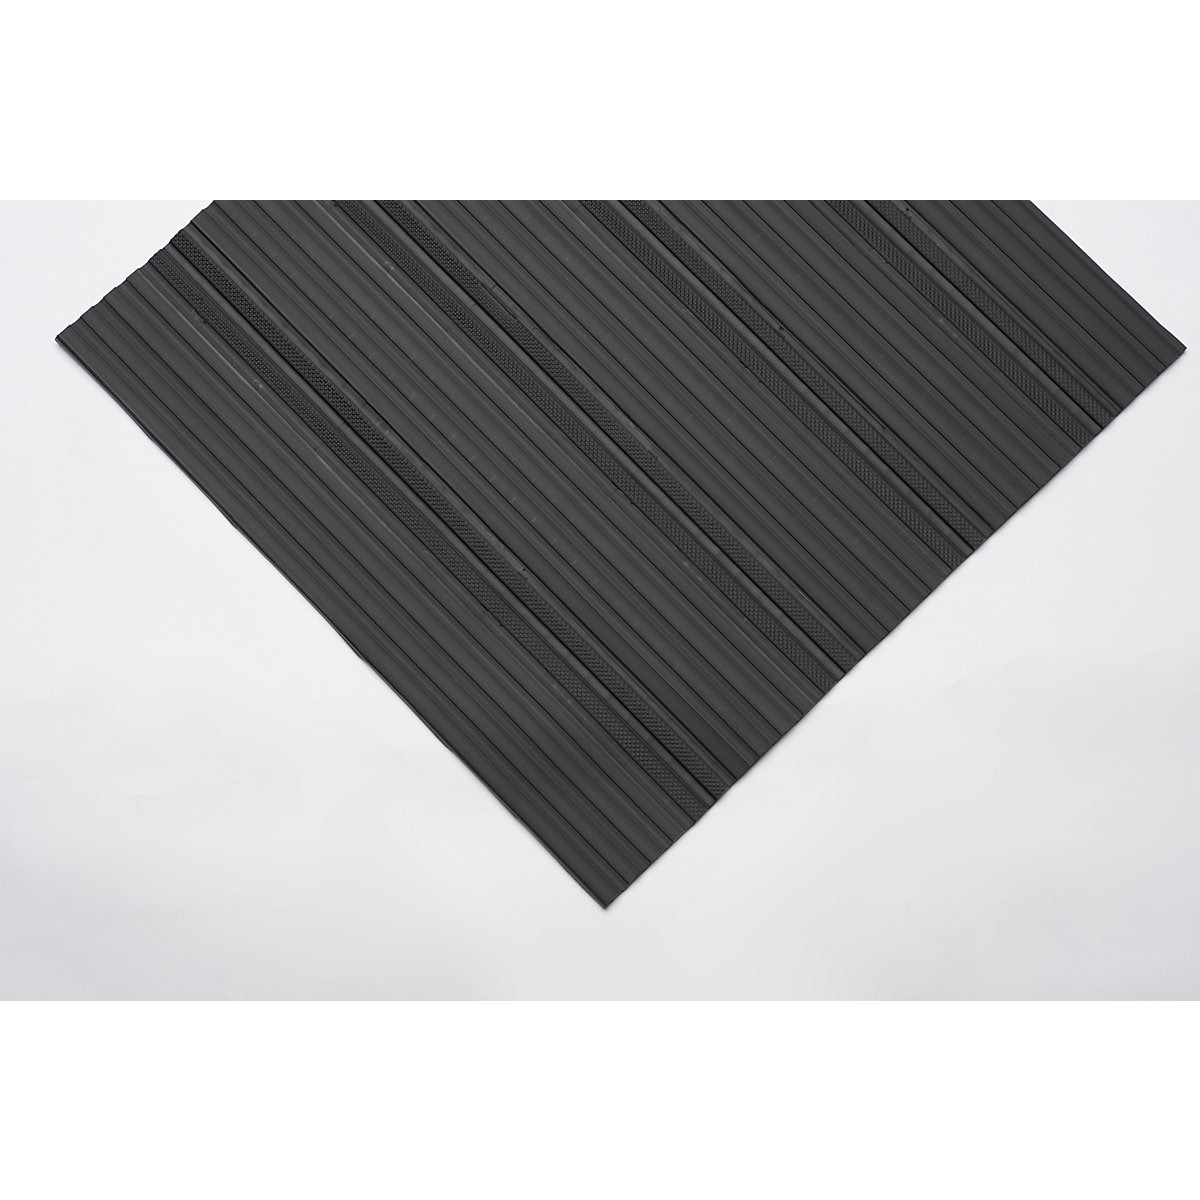 Weich-PVC-Läufer, mit geschlossener Oberfläche, pro lfd. m, schwarz, Breite 600 mm-4